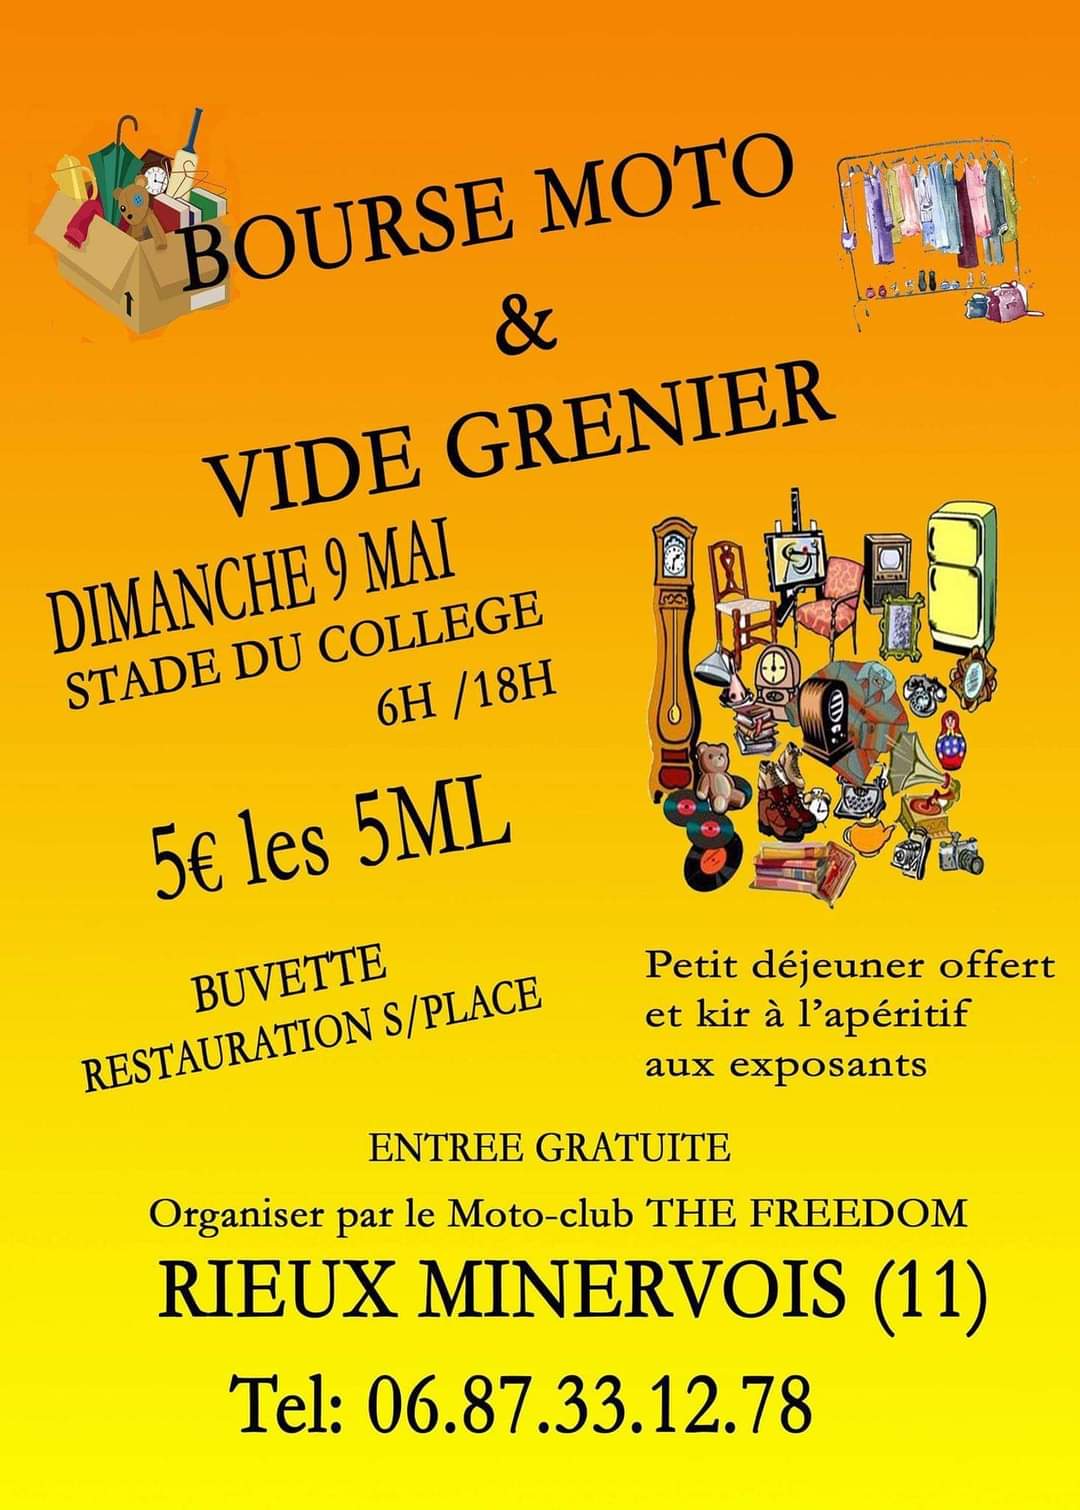 (11) - 9 mai 2021 - Bourse moto à Rieux Minervois Facebo23